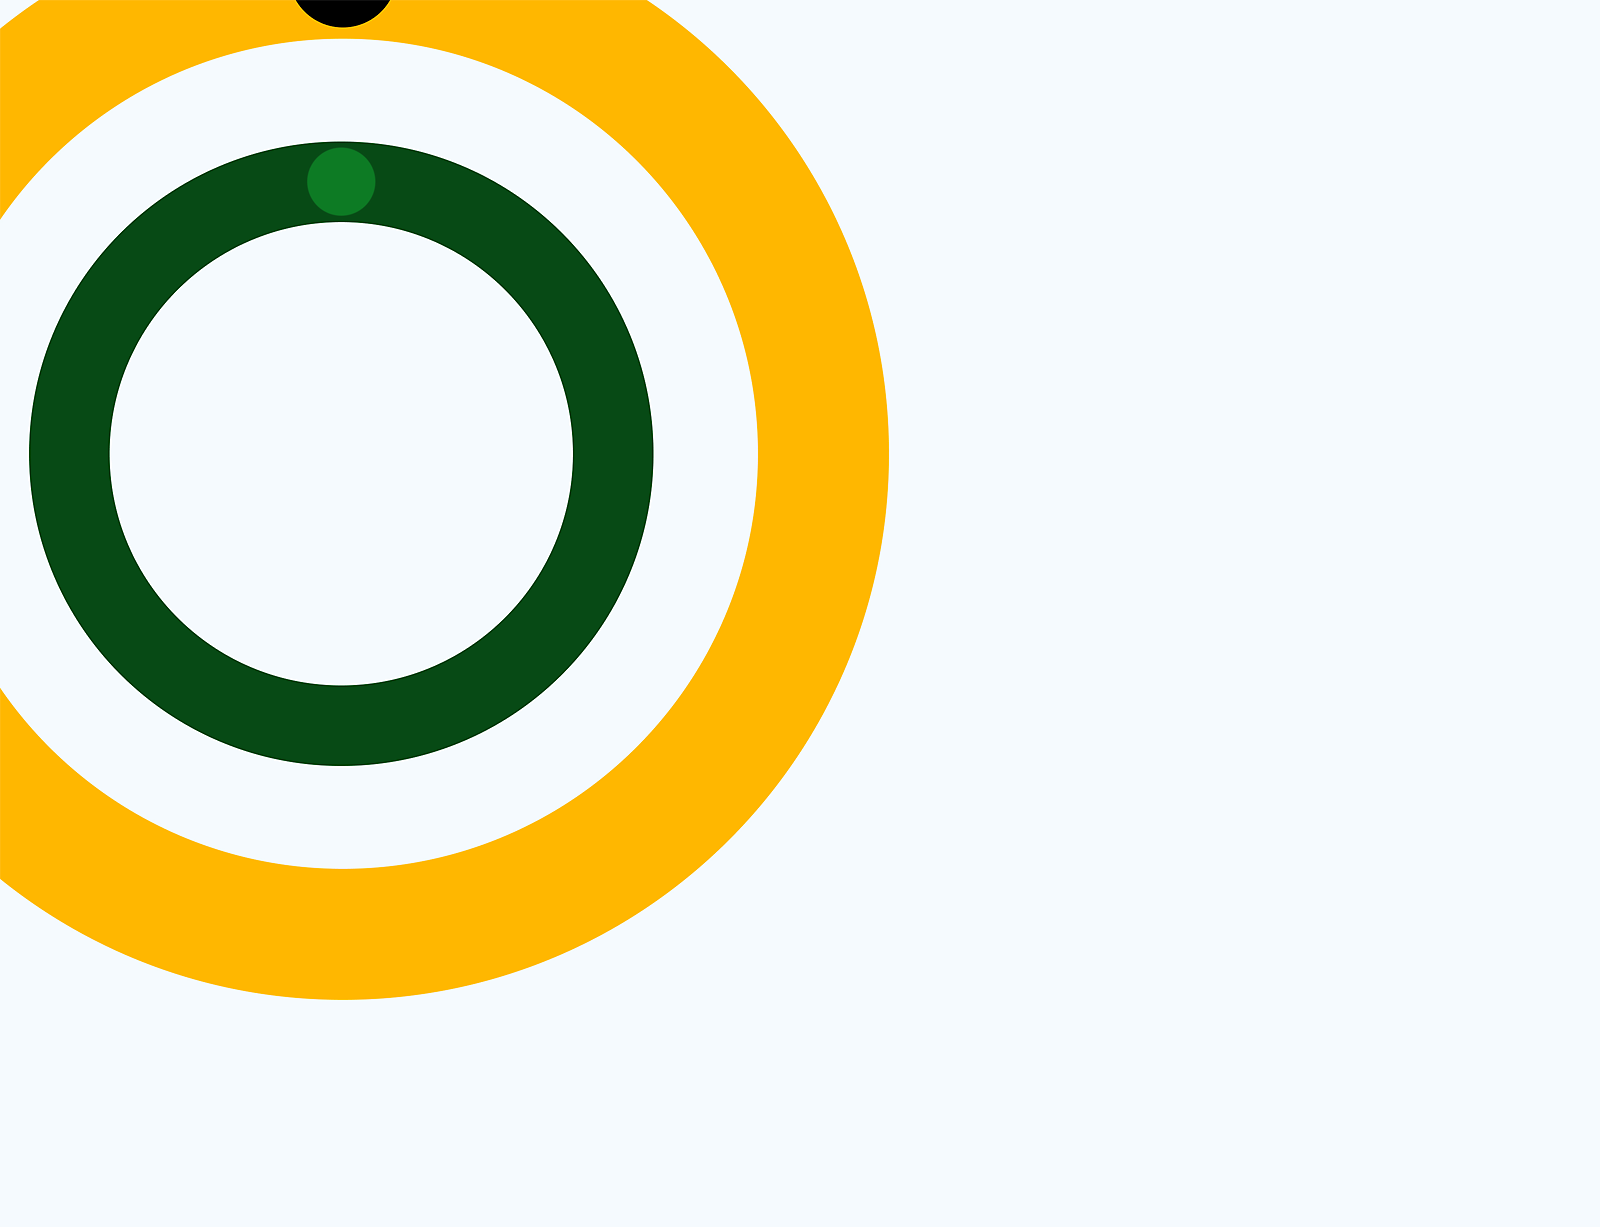 Gráfico abstracto de círculos concéntricos verdes, amarillos y blancos sobre un fondo gris.